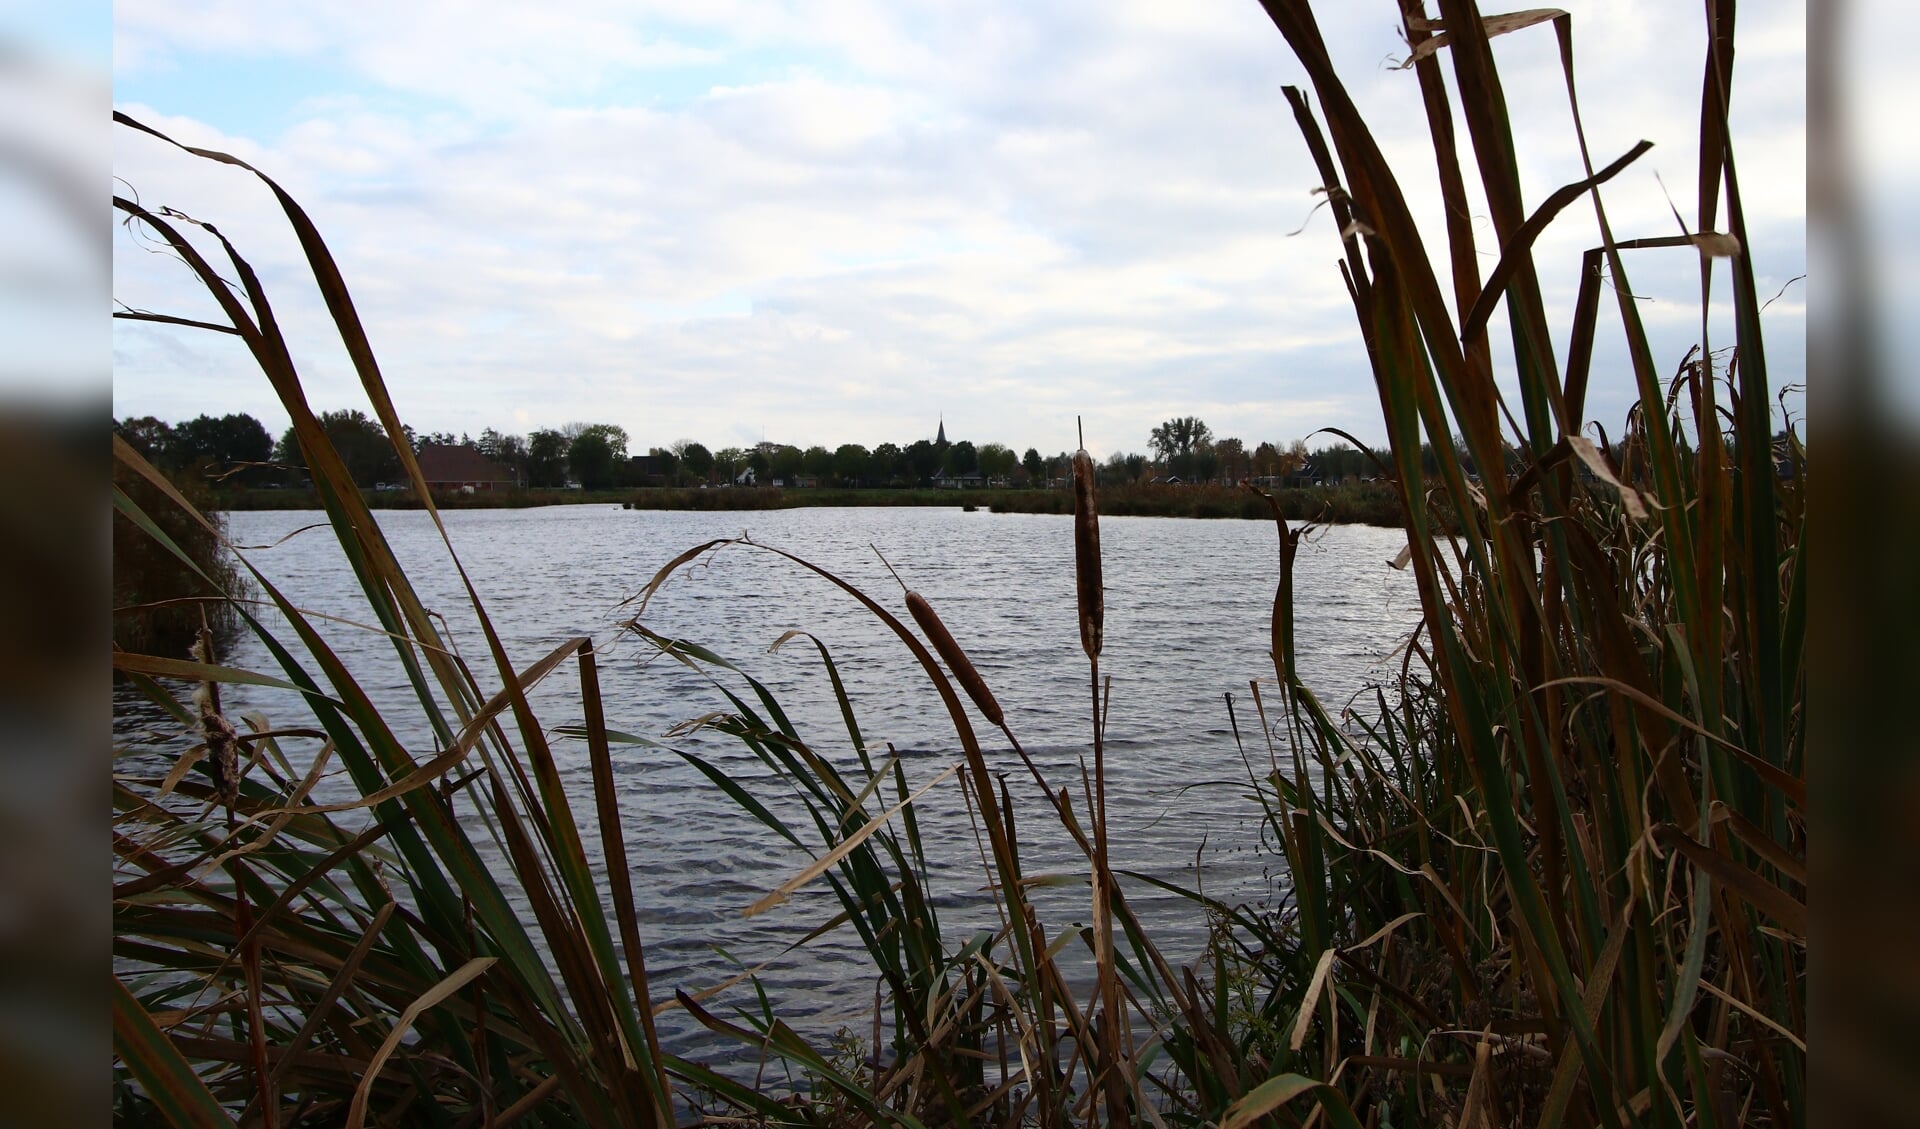 Het natuurgebied Wikelslân met uitzicht op Earnewâld is onderdeel van de Alde Feanen. Het water in dit natuurgebied moet nog schoner worden.